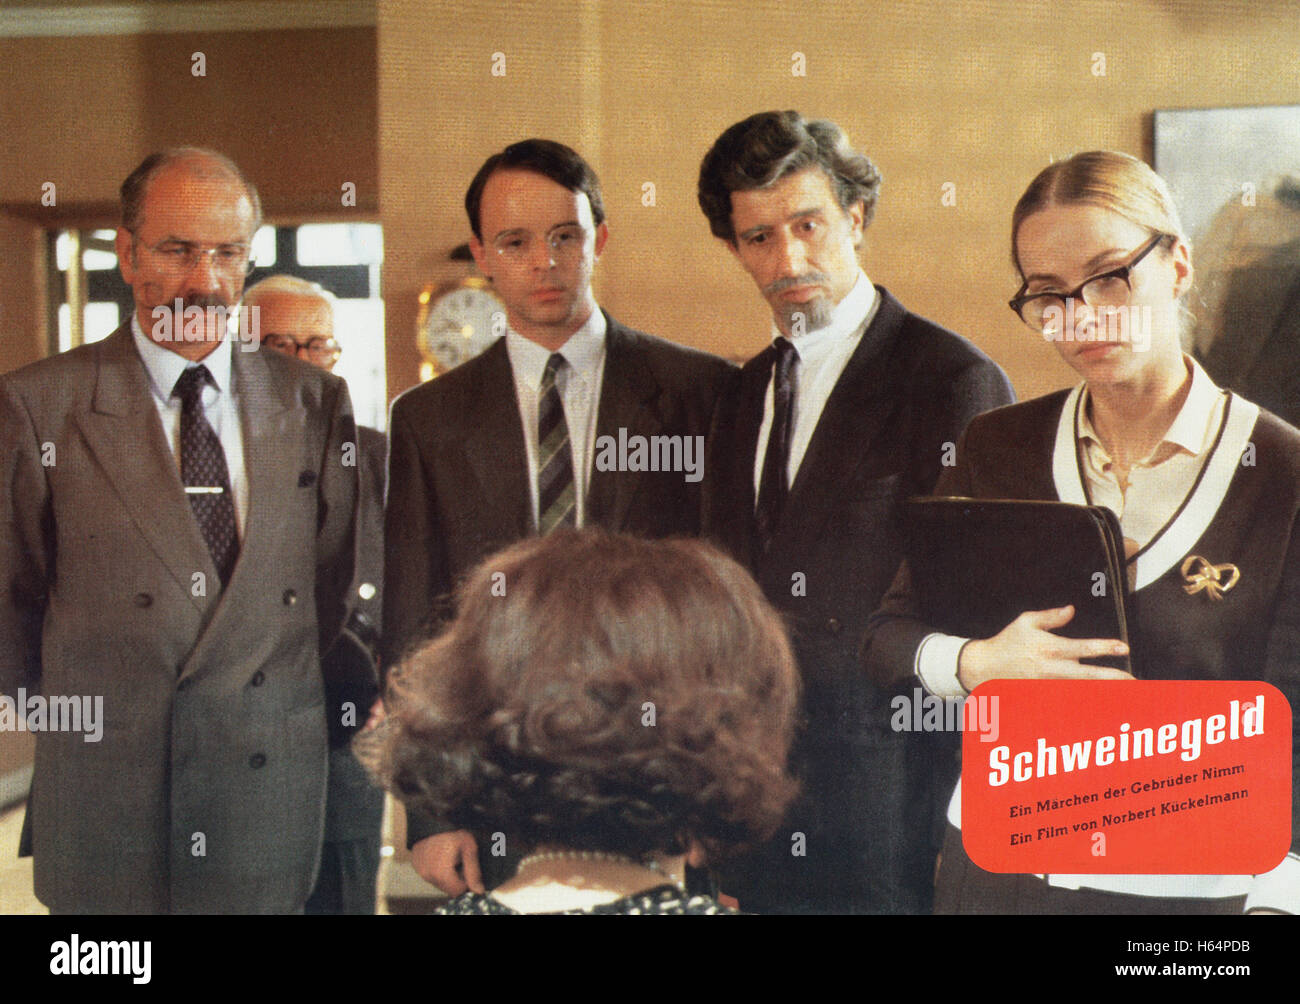 Schweinegeld, Deutschland 1989, Regie: Norbert Kückelmann, Darsteller: Armin Müller Stahl, Stefan Suske (?), Rolf Zacher, Claudia Messner Stock Photo